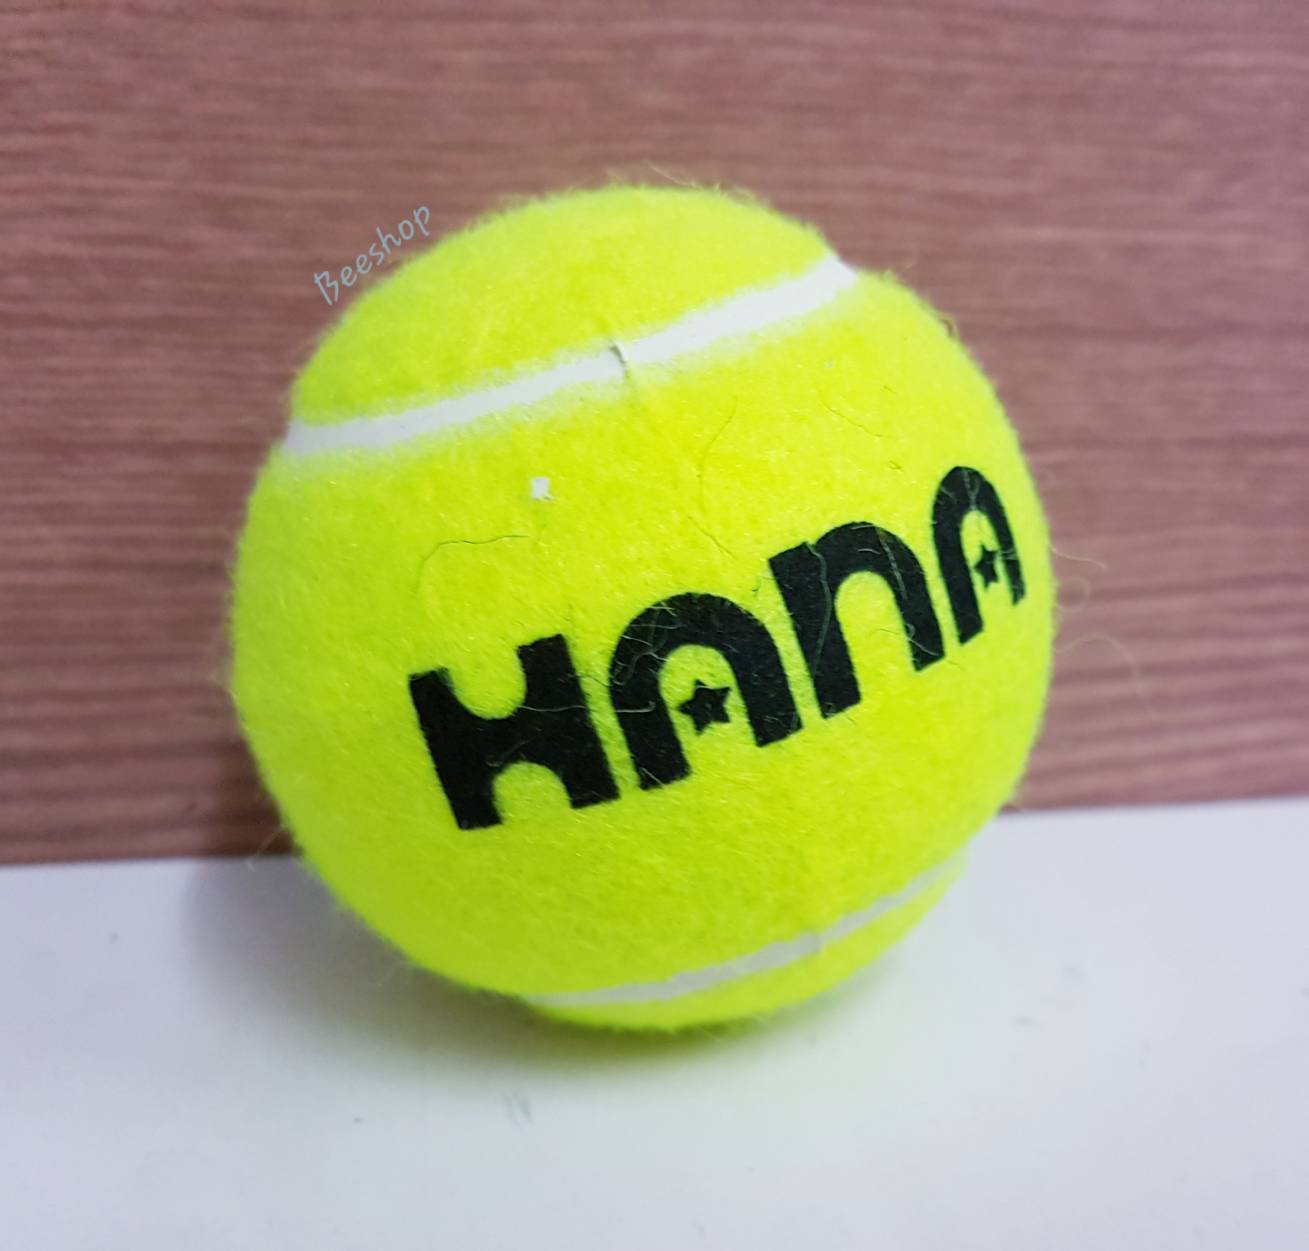 ลูกเทนนิส Hana บอลขนาดมาตราฐาน เหมาะสำหรับใช้ในการฝึกซ้อม เล่นเทนนิส หรือ ใช้เล่นกับสุนัข ขนาดเส้นผ่าศูนย์กลาง 6.5cm